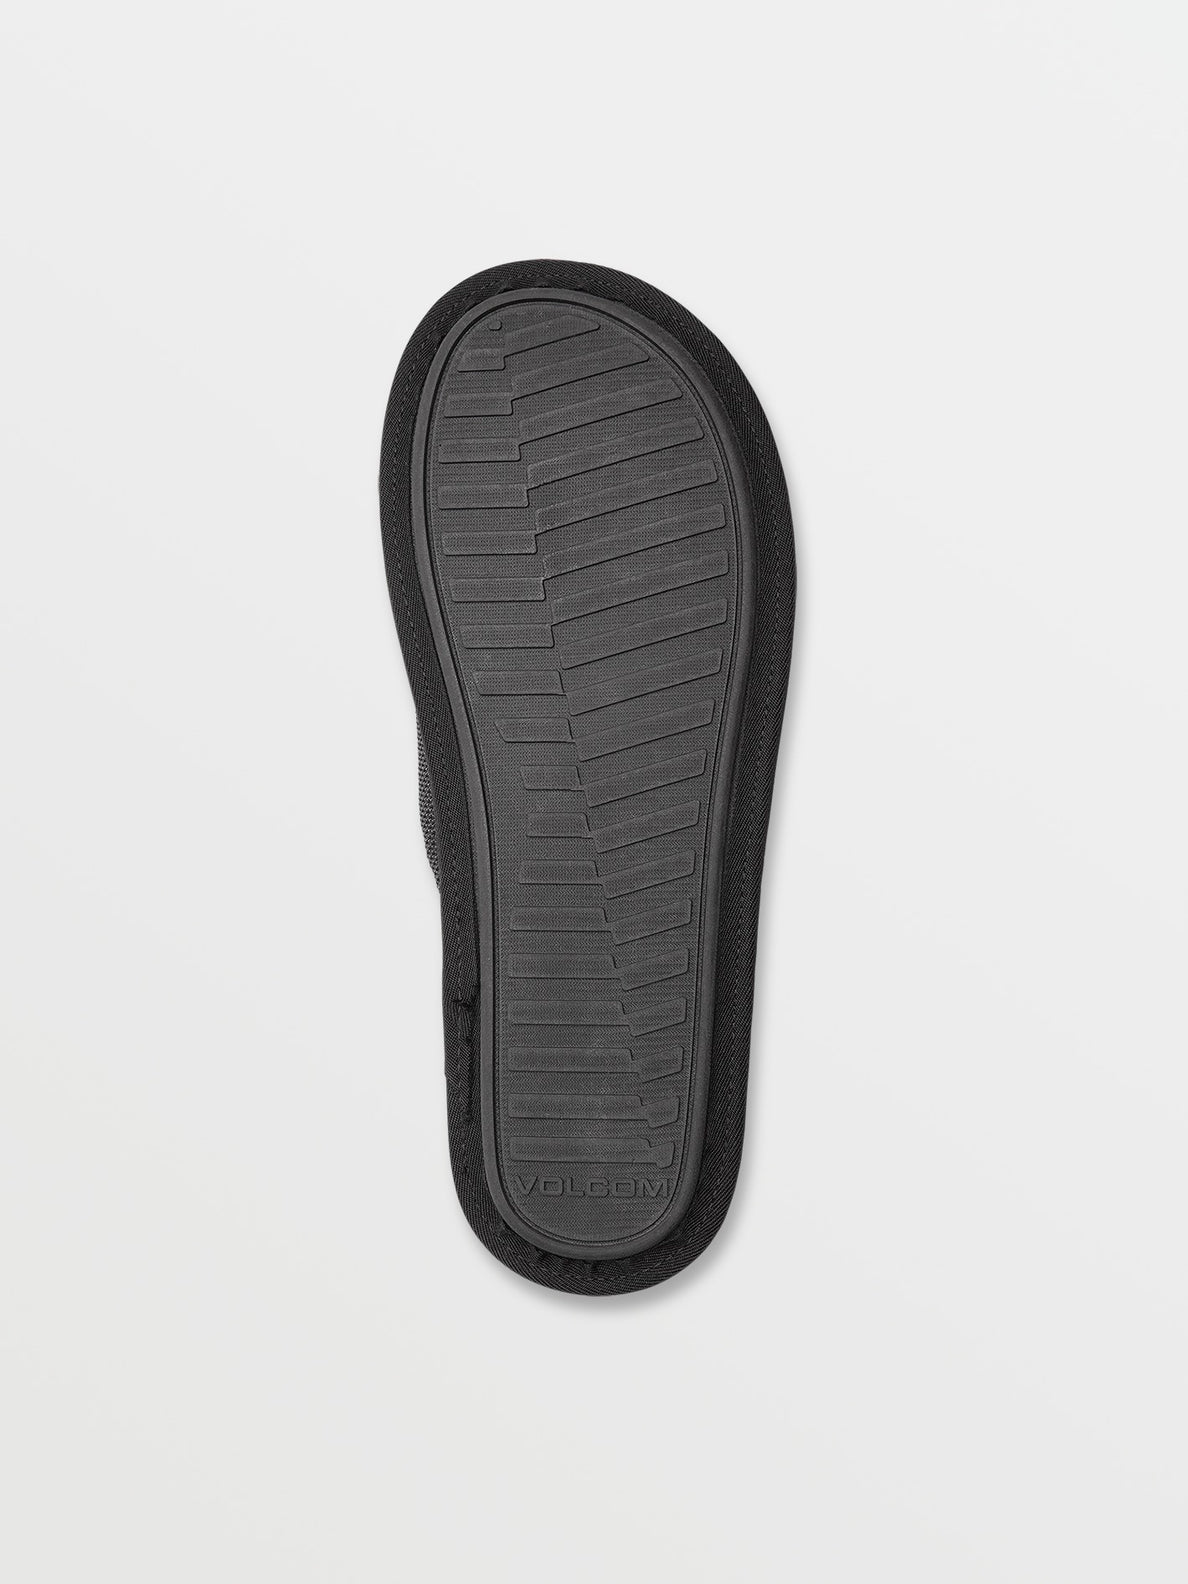 Stoney Motel Slip Sandals - Black Grey